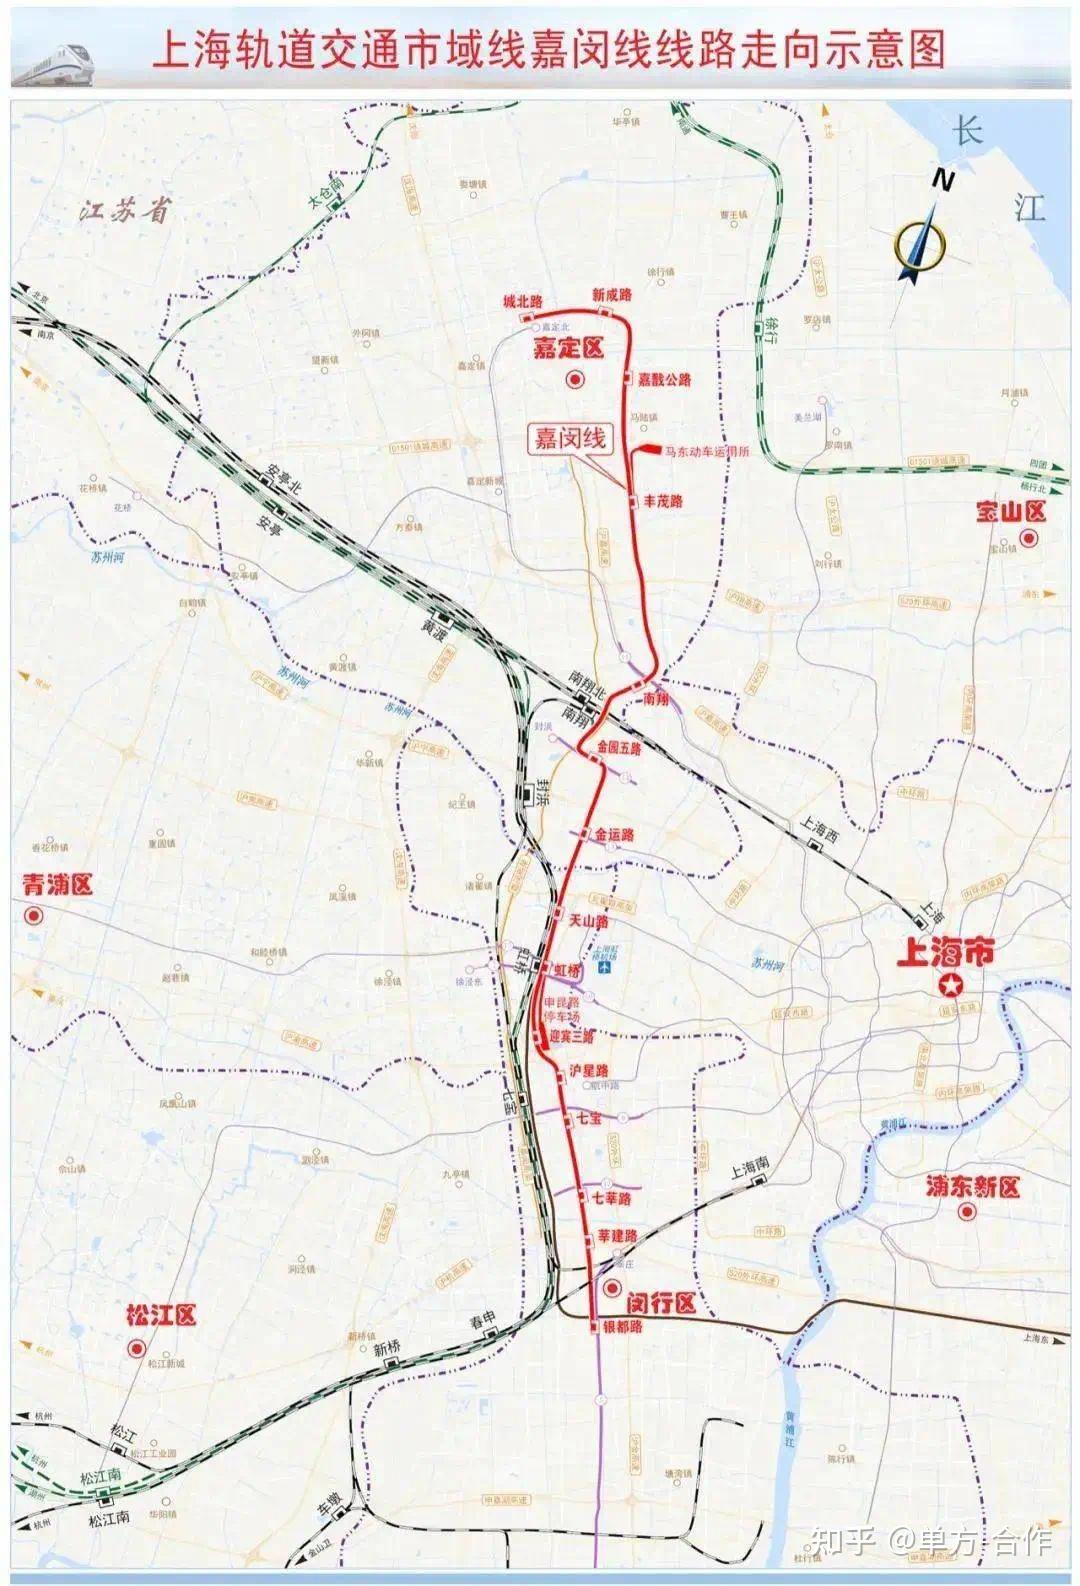 256亿元上海嘉闵线(含北延伸)《长江三角洲地区多层次轨道交通规划》